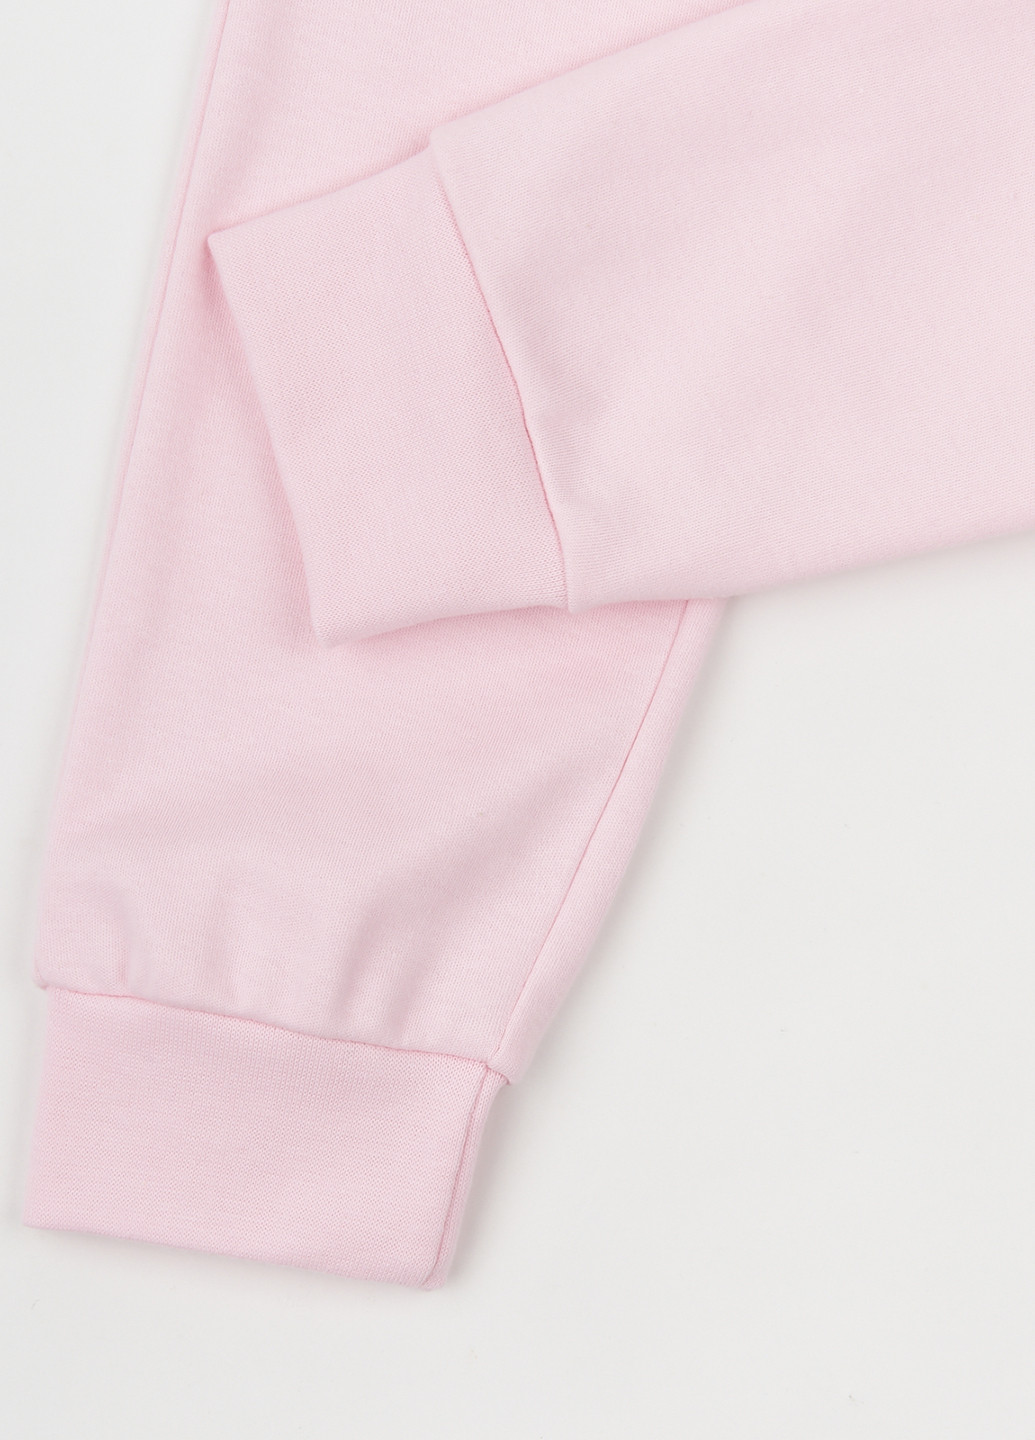 Розовая всесезон пижама (свитшот, брюки) свитшот + брюки Garnamama